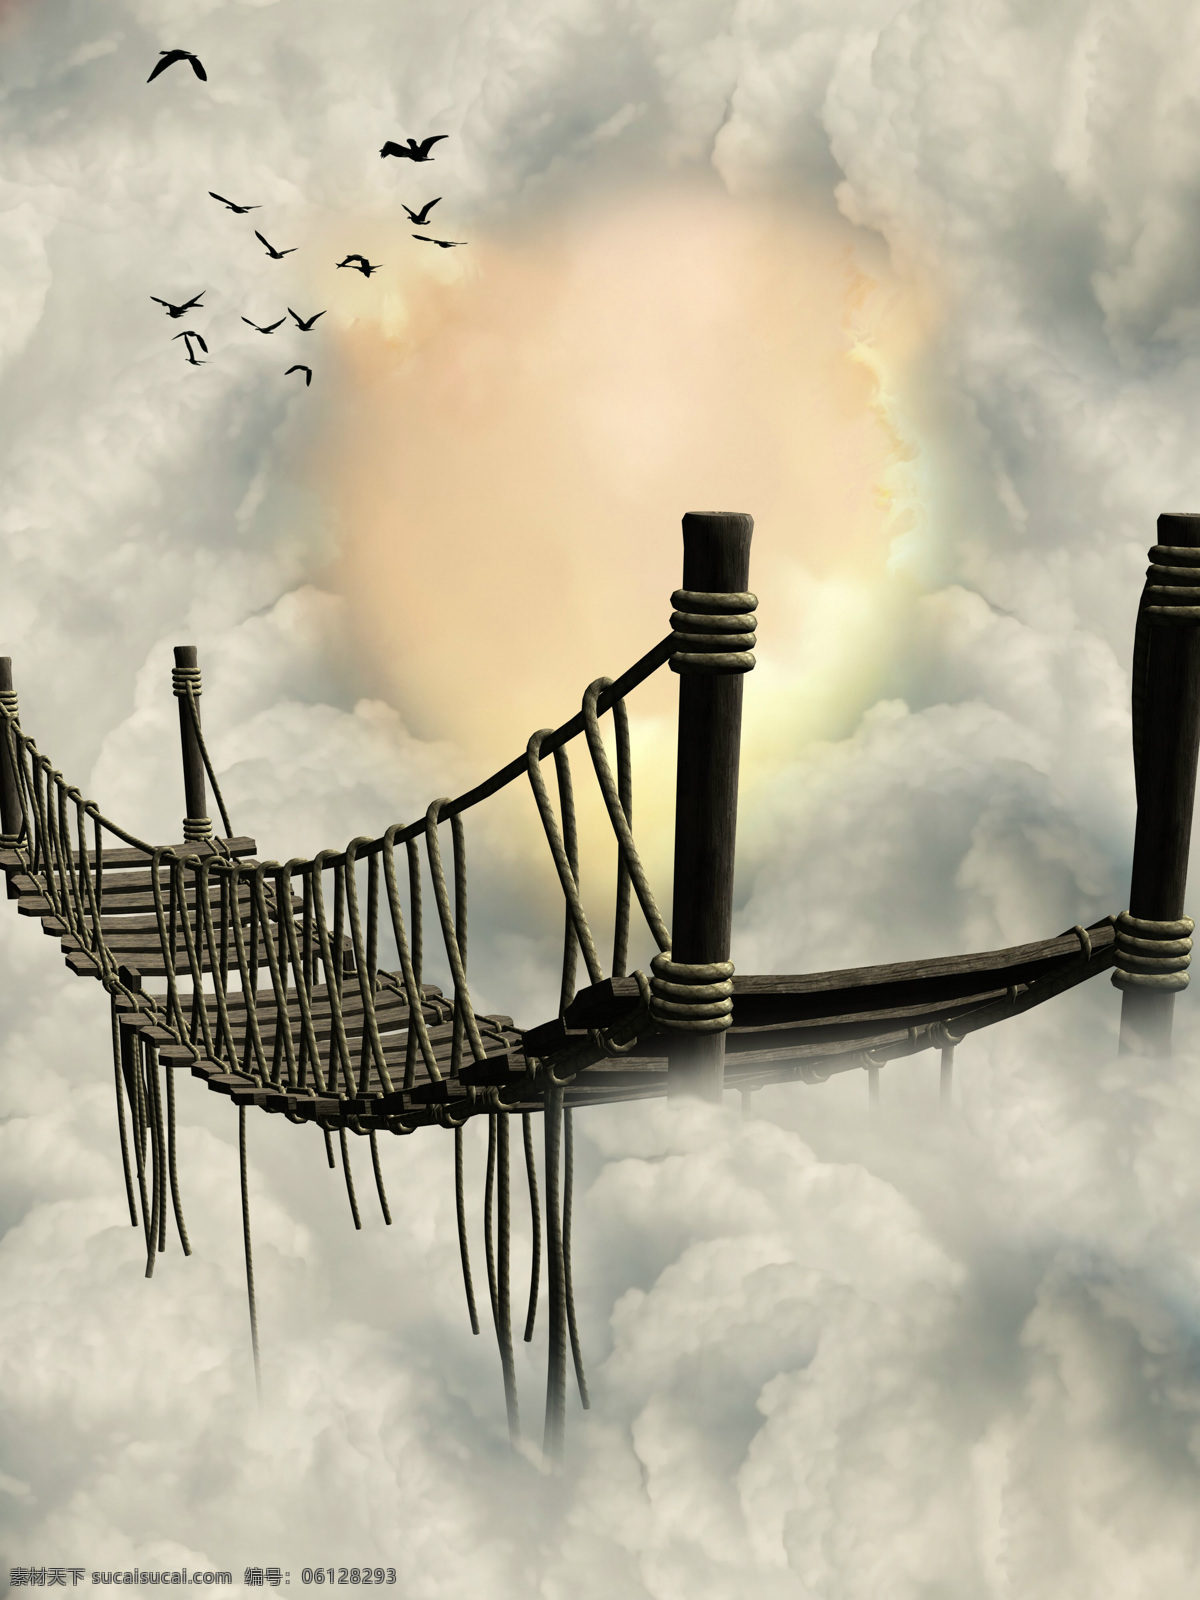 梦幻 木板桥 风景 梦幻风景 索道桥 飞鸟 天空 白云 云层 阳光 奇观 光芒 抽象图片 创意 自然风景 自然景观 黑色